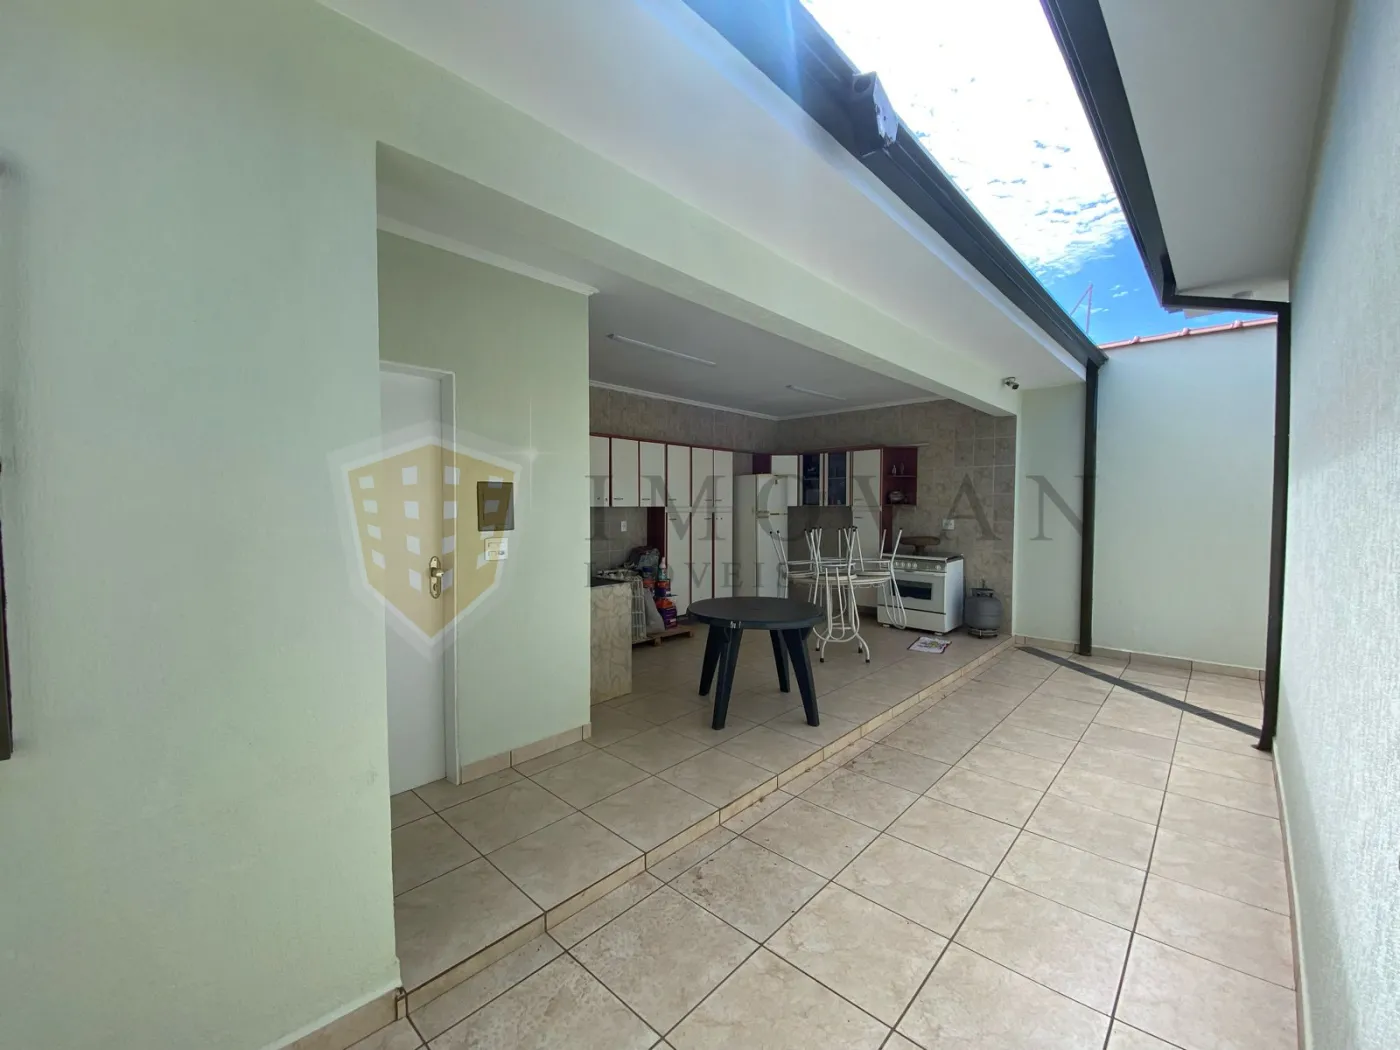 Comprar Casa / Padrão em Ribeirão Preto R$ 580.000,00 - Foto 19